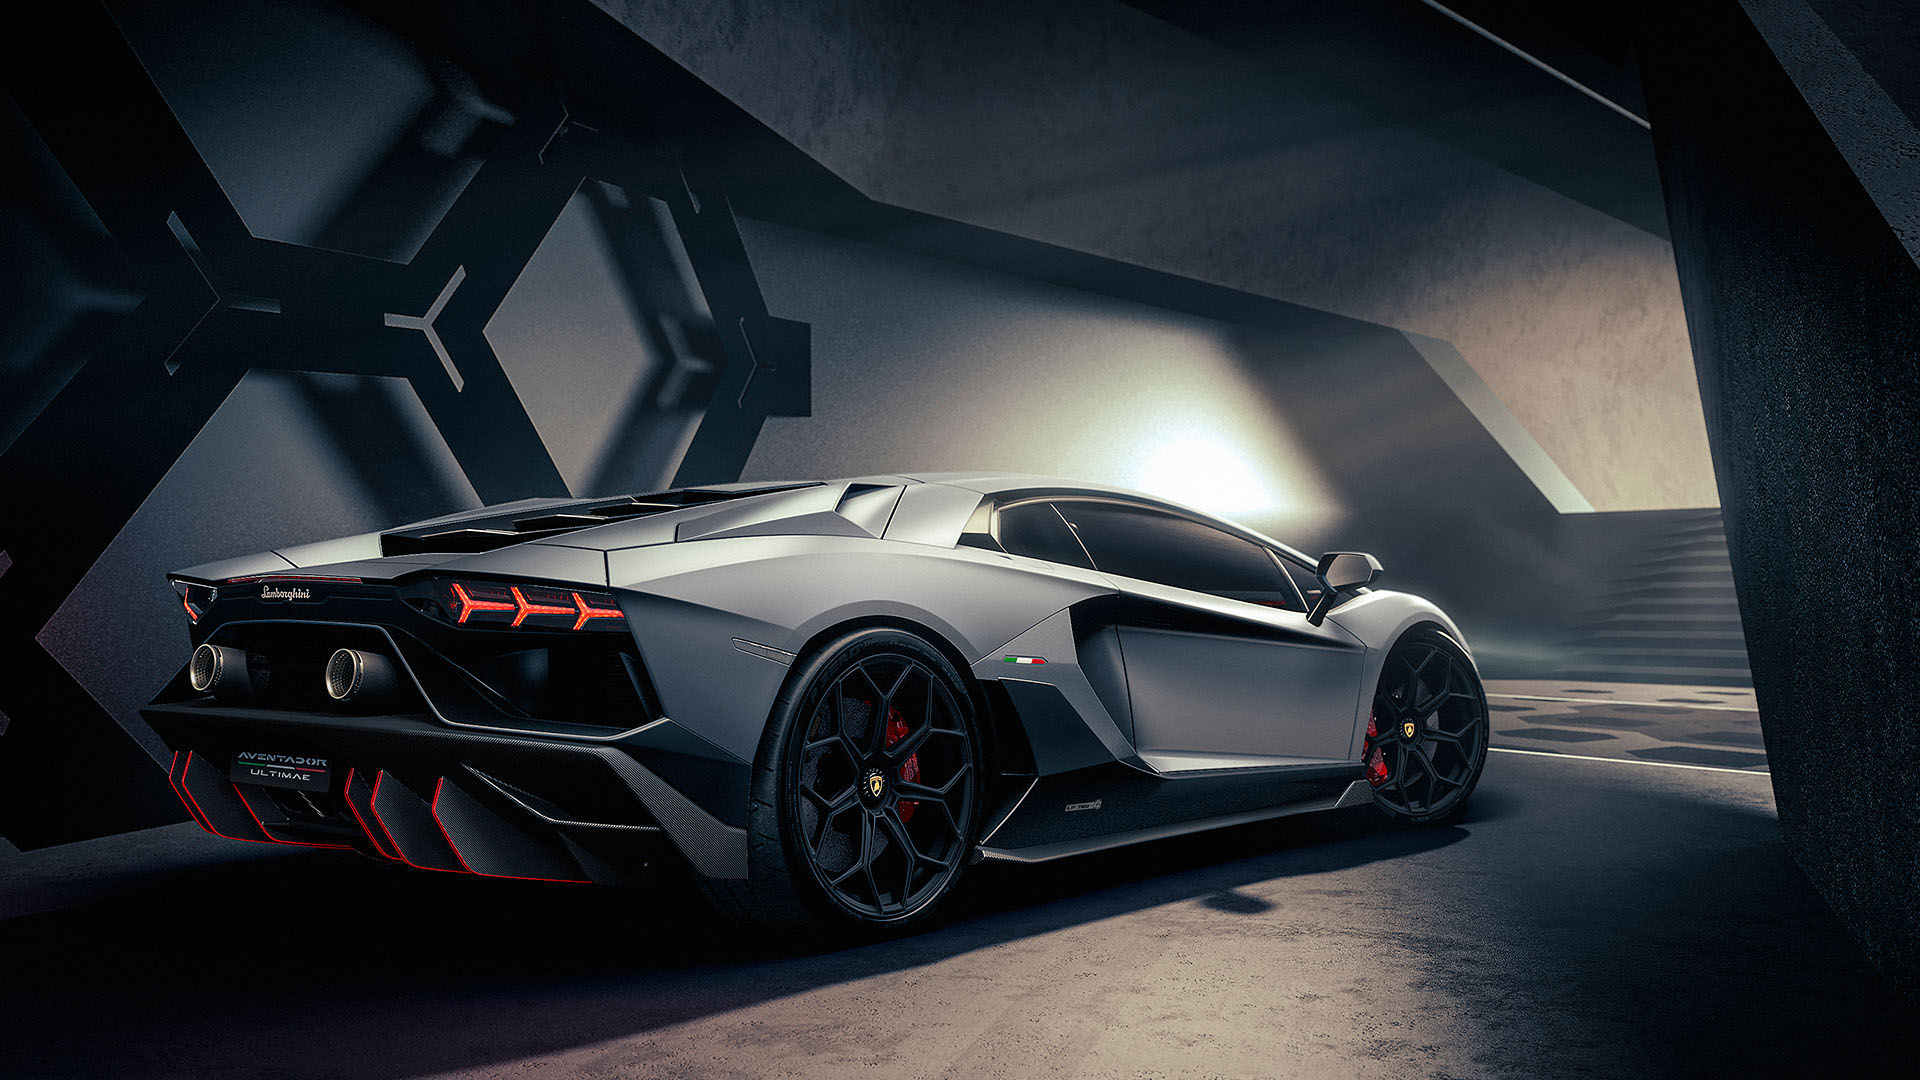 Linea Aventador đến hồi kết tại Lamborghini - Một câu chuyện đầy kích thích và kịch tính về siêu xe Lamborghini Aventador. Hãy cùng theo dõi hành trình đầy nảy lửa của chiếc xe tốc độ này và hiểu rõ hơn về sức mạnh của nó.